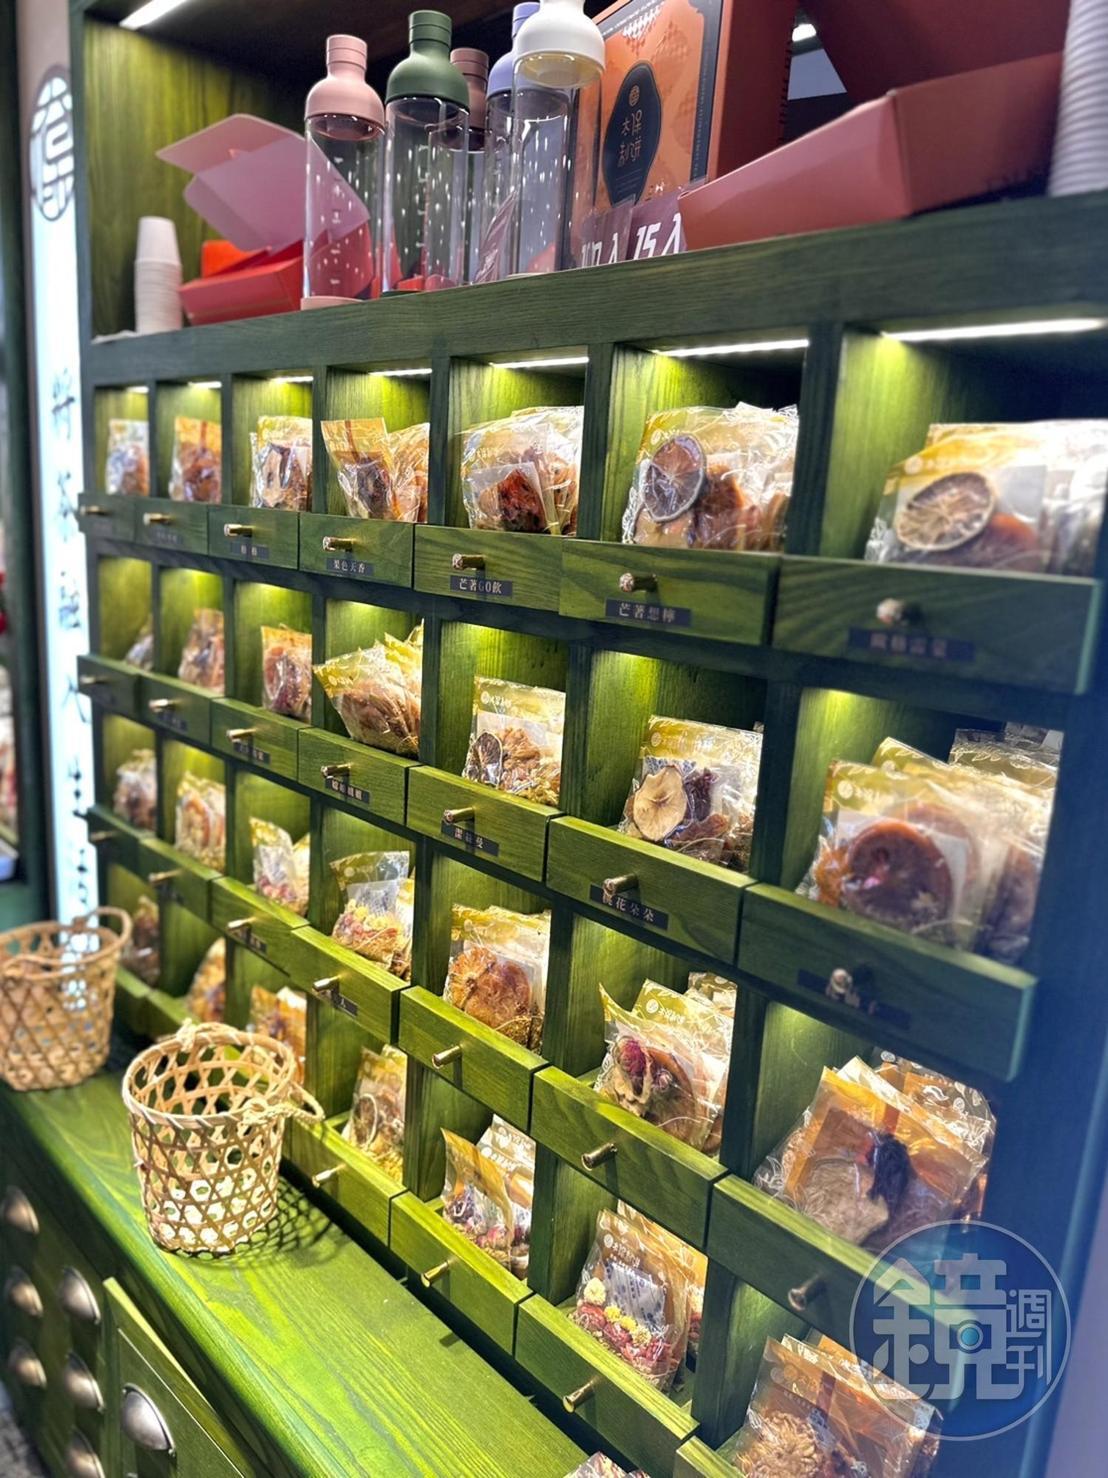 店內也特別設置如同中藥行藥櫃的抽屜牆，擺放近30種不同風味的果乾茶包。